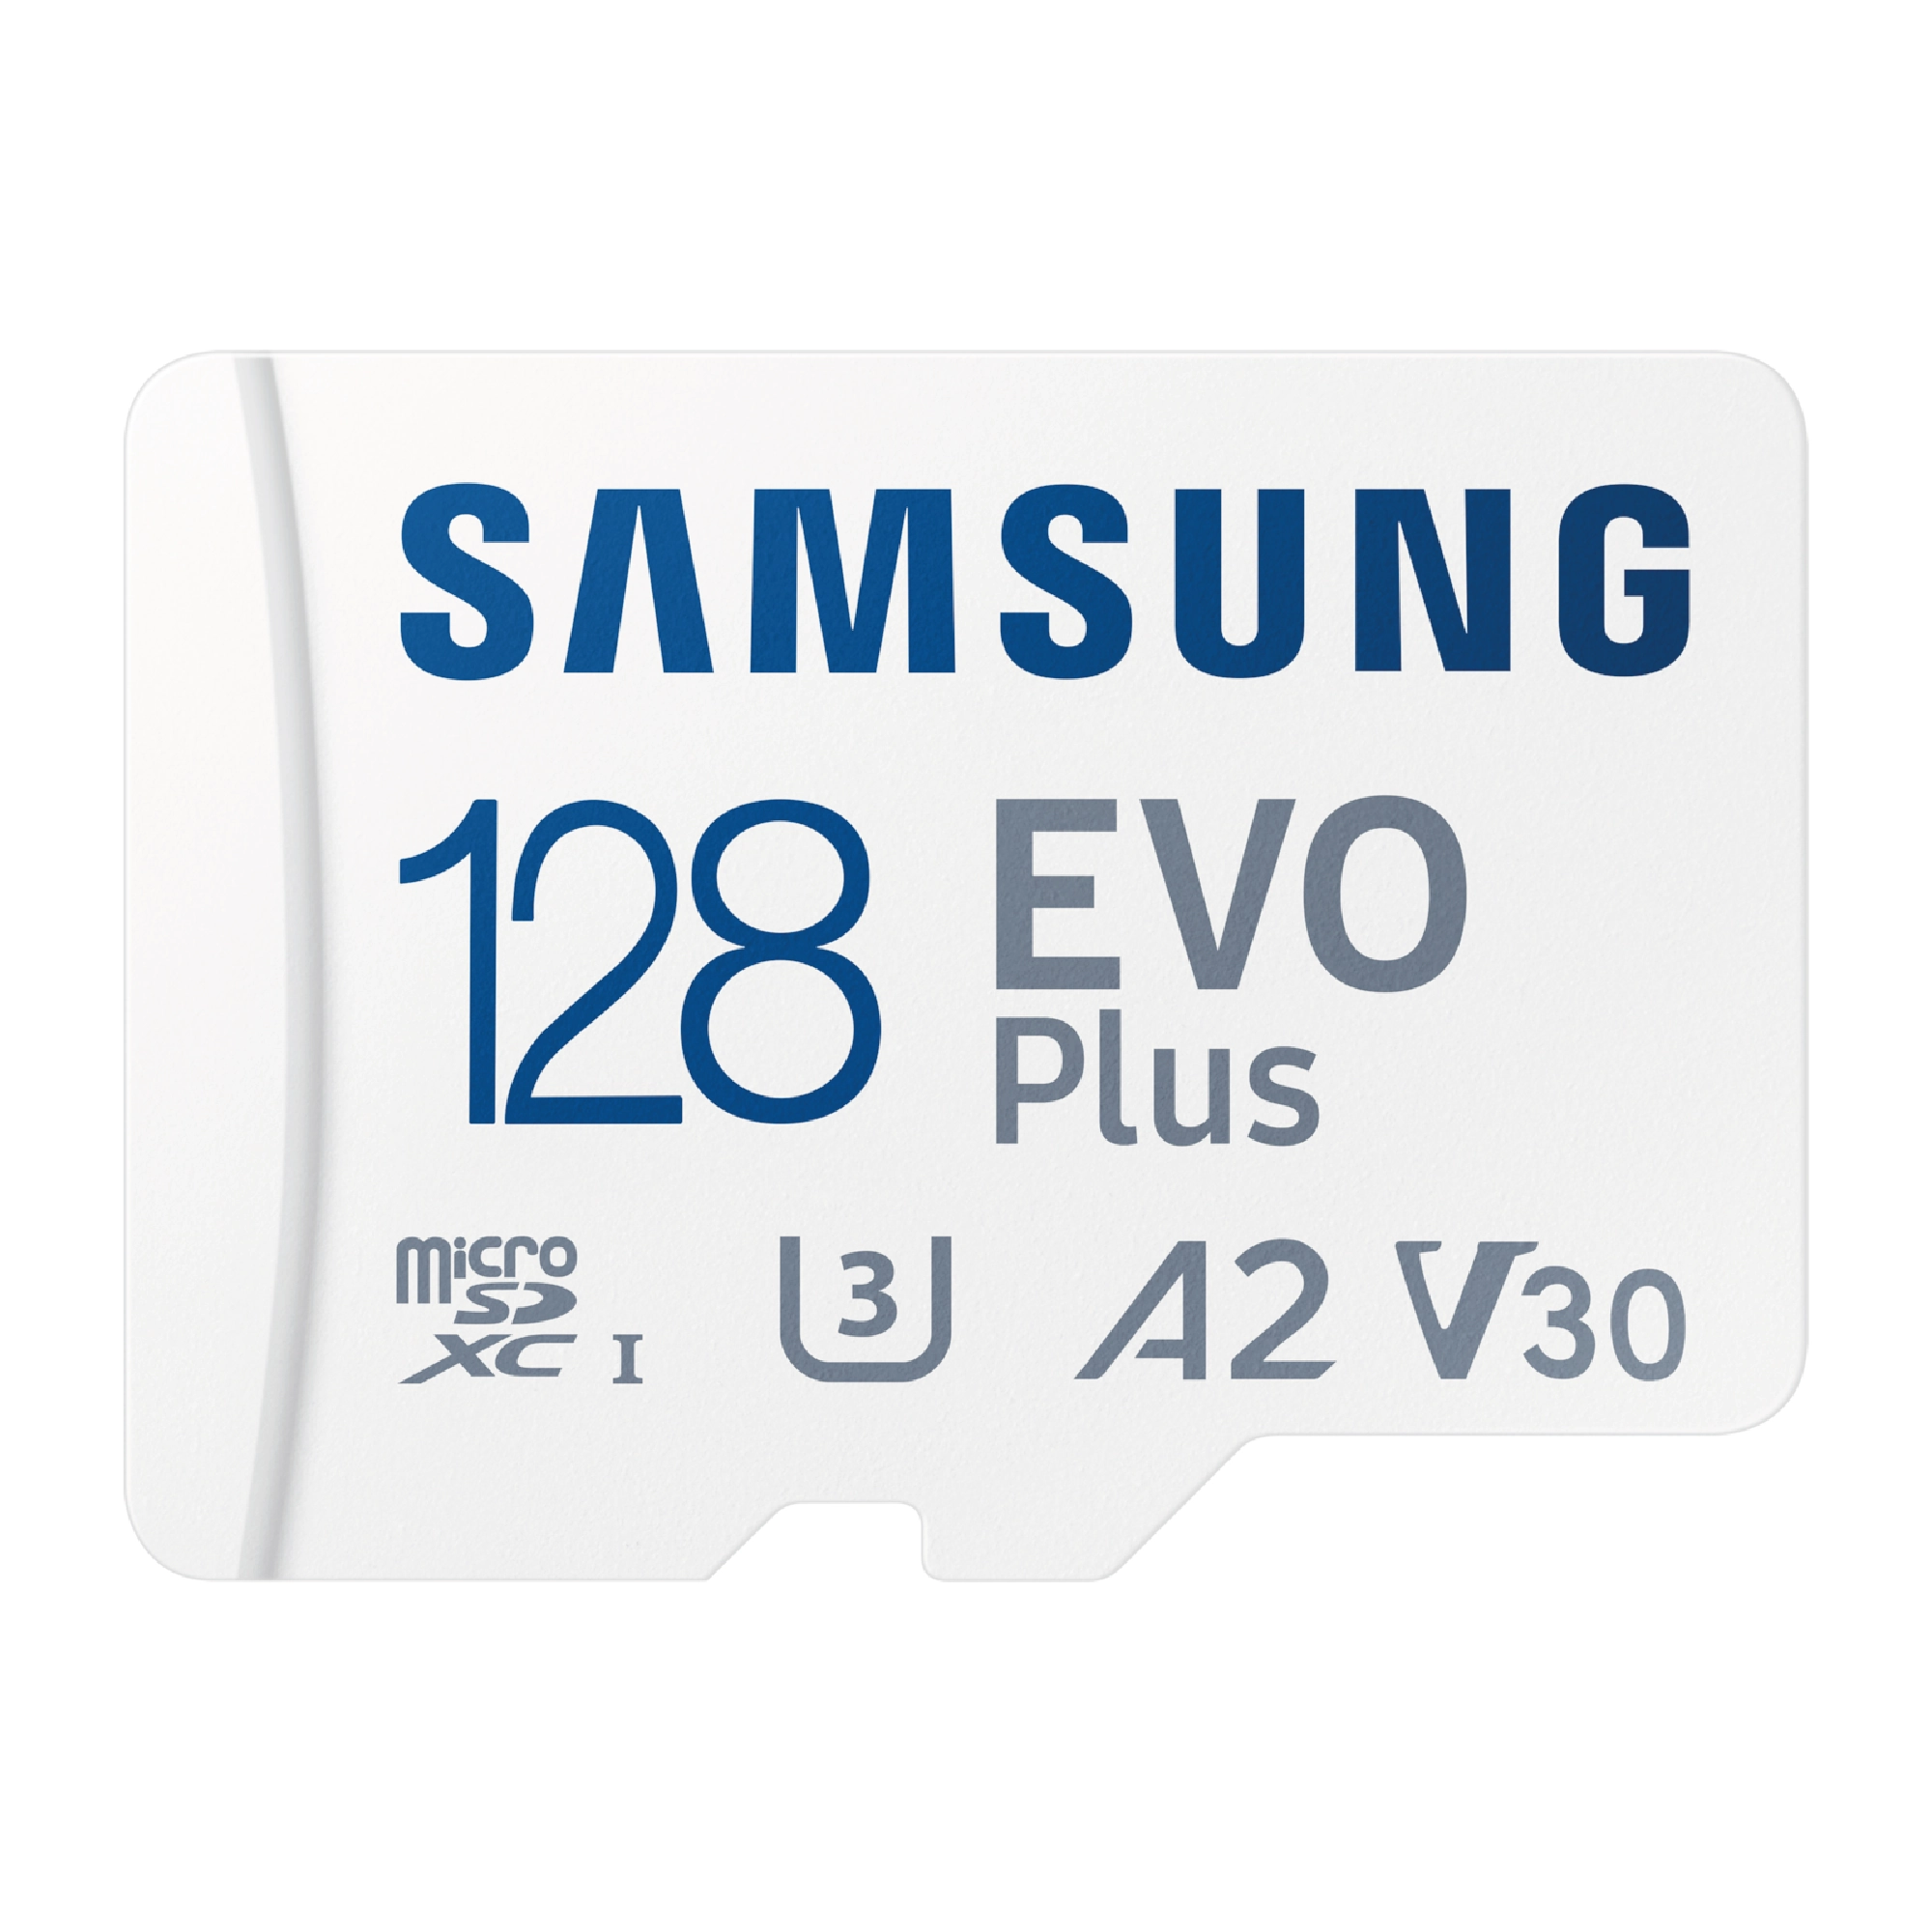 Samsung EVO Plus microSD Hafıza Kartı 128 GB (1)